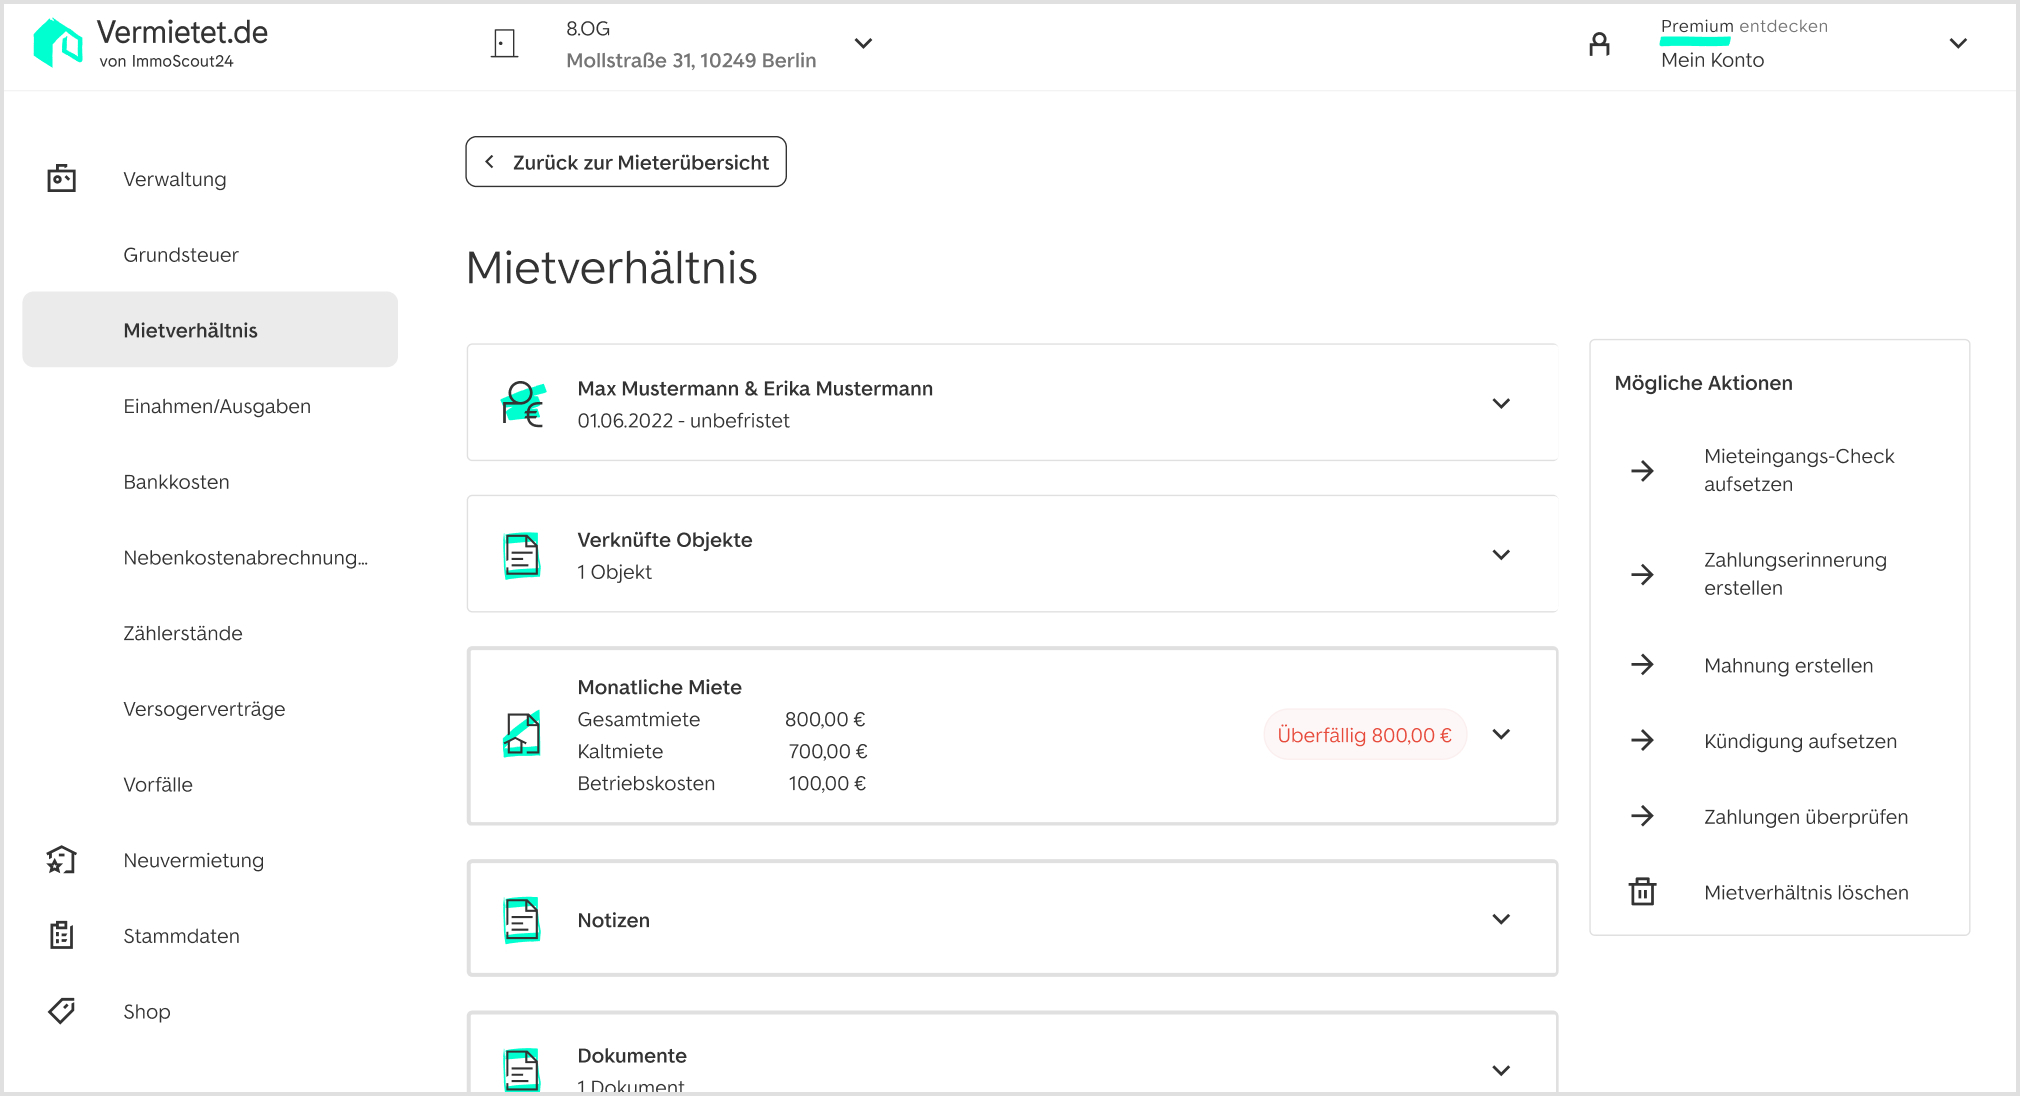 Screenshot der digitalen Vermietet.de Software auf welchem das Mietverhältnis inklusive relevanter Informationen zum Mieter zu sehen ist.